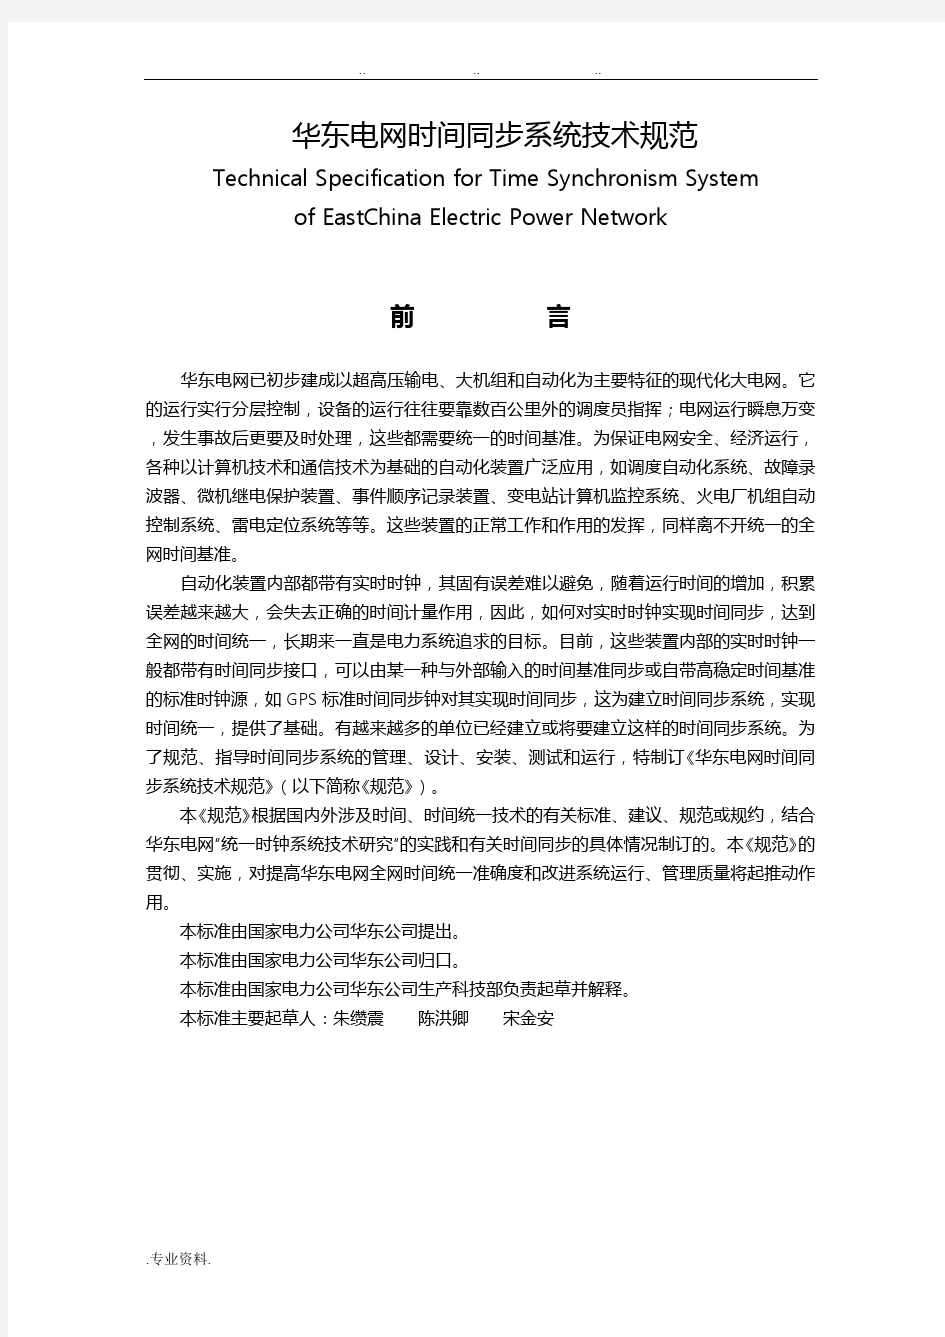 华东电网时钟统一(同步)系统技术规范标准